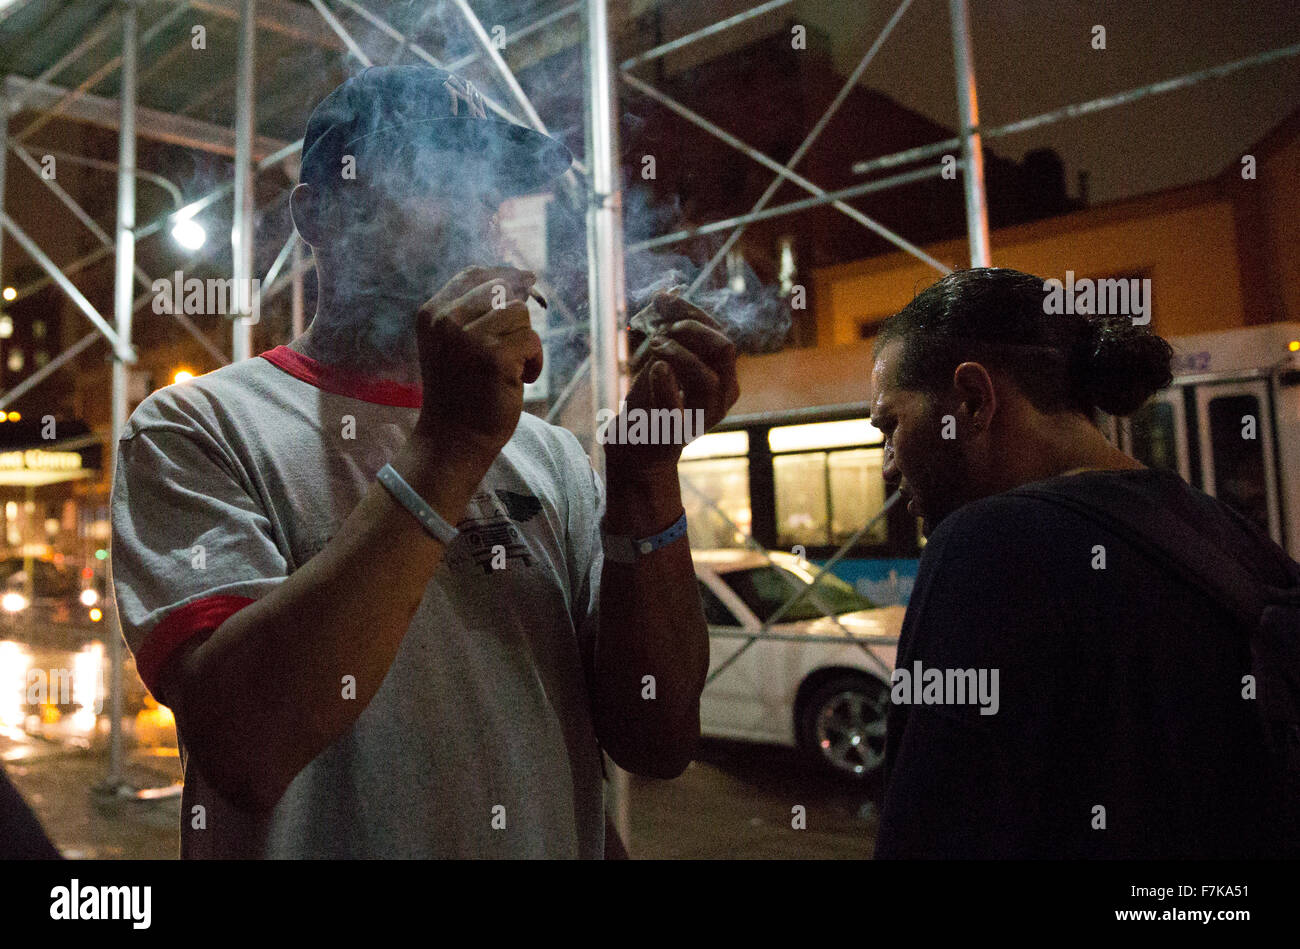 Septembre 11, 2015, New York, NY : Les utilisateurs du médicament K 2 fumée ouvertement sur une zone de Harlem connu comme ' K 2 allié. ' K 2 Banque D'Images